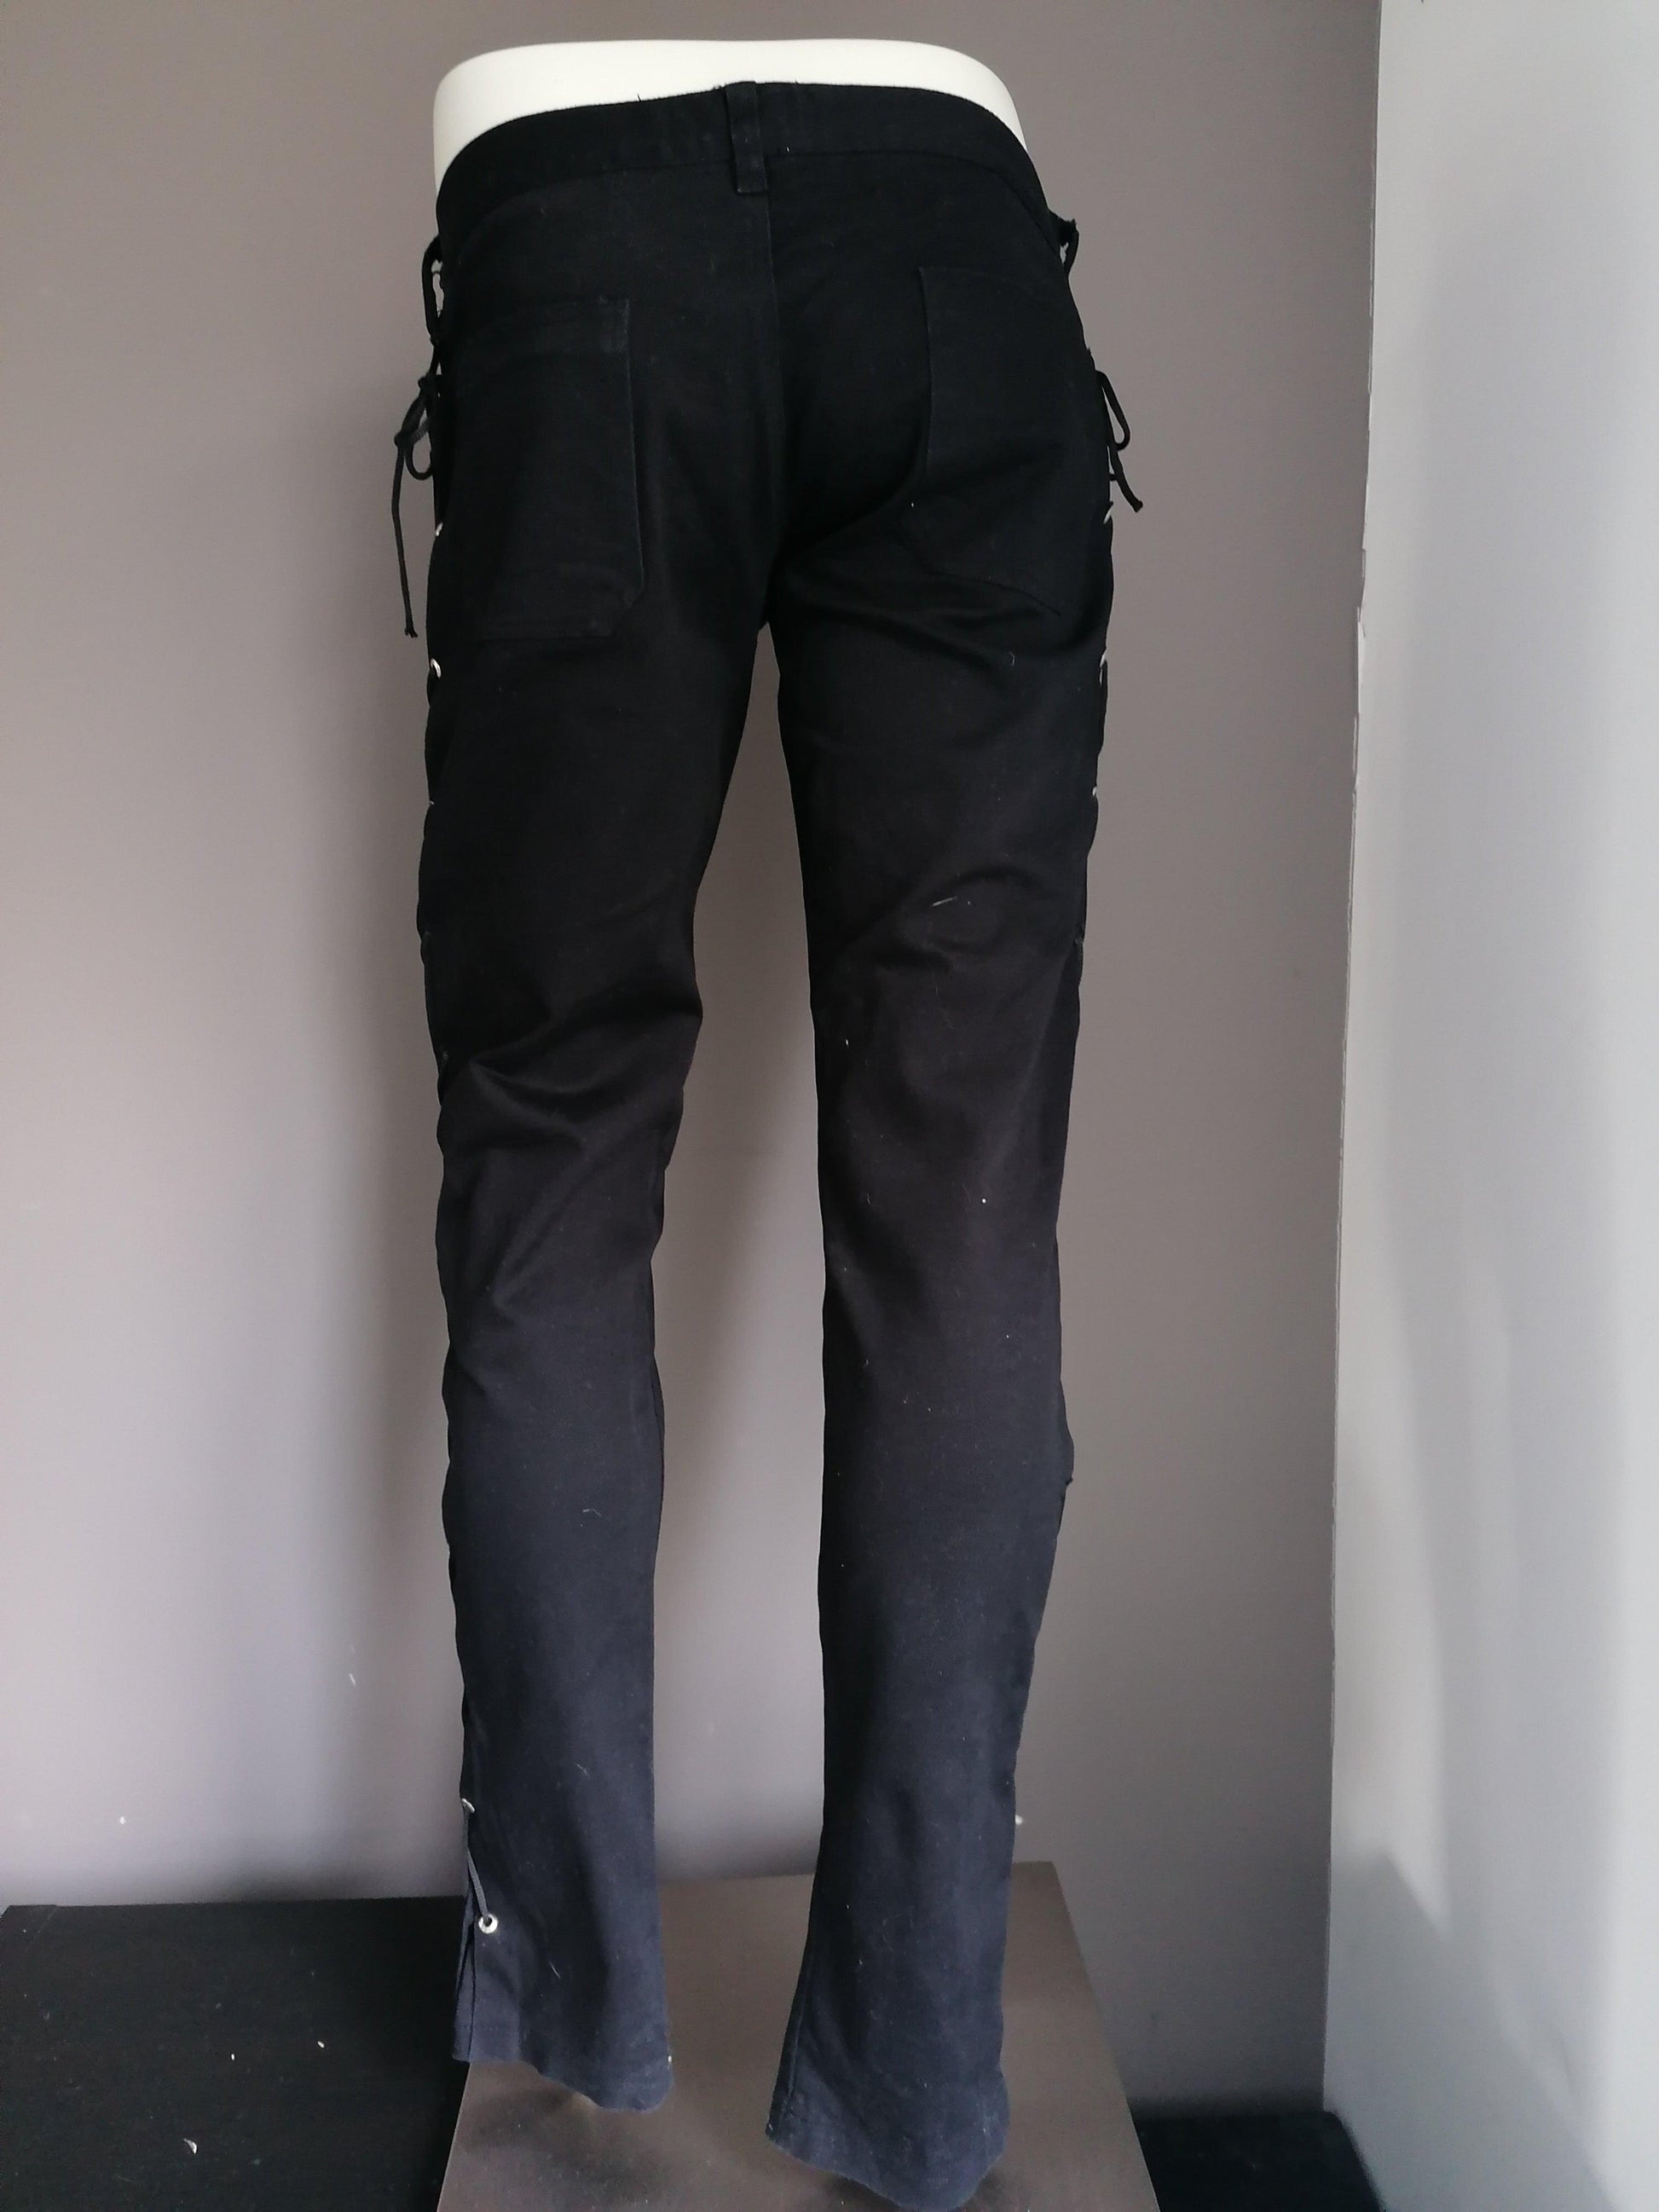 B keus: Black Pistol broek met vetersluiting zijkant. Zwart gekleurd. Maat W38 - L34 - EcoGents